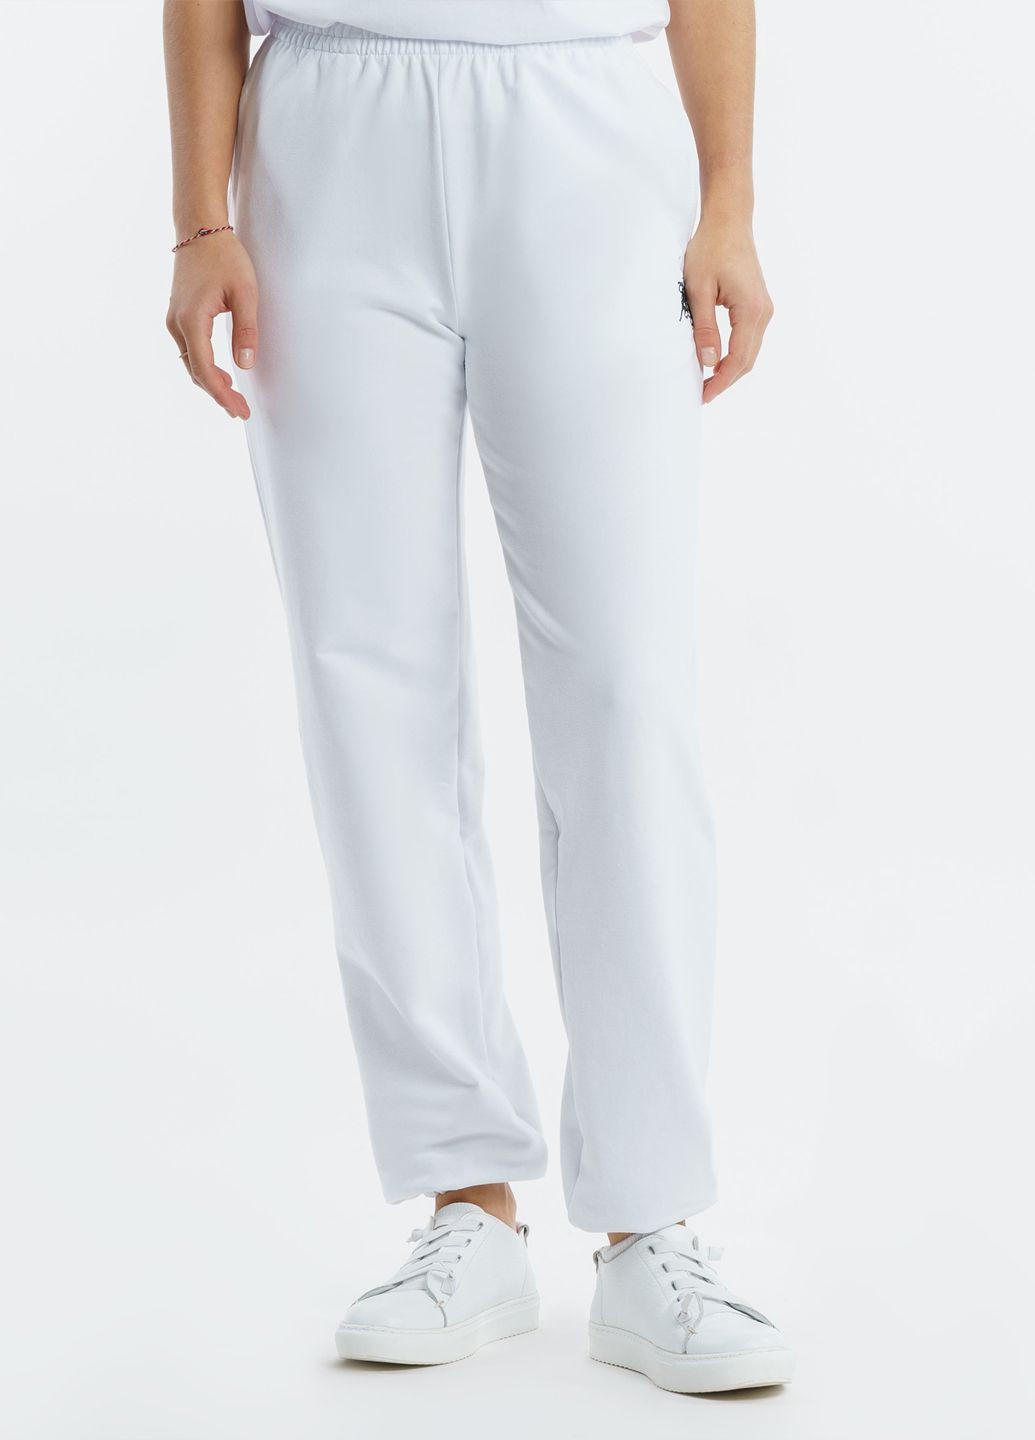 Спортивные брюки женские Freedom белые Arber sportpants w6 (282841898)